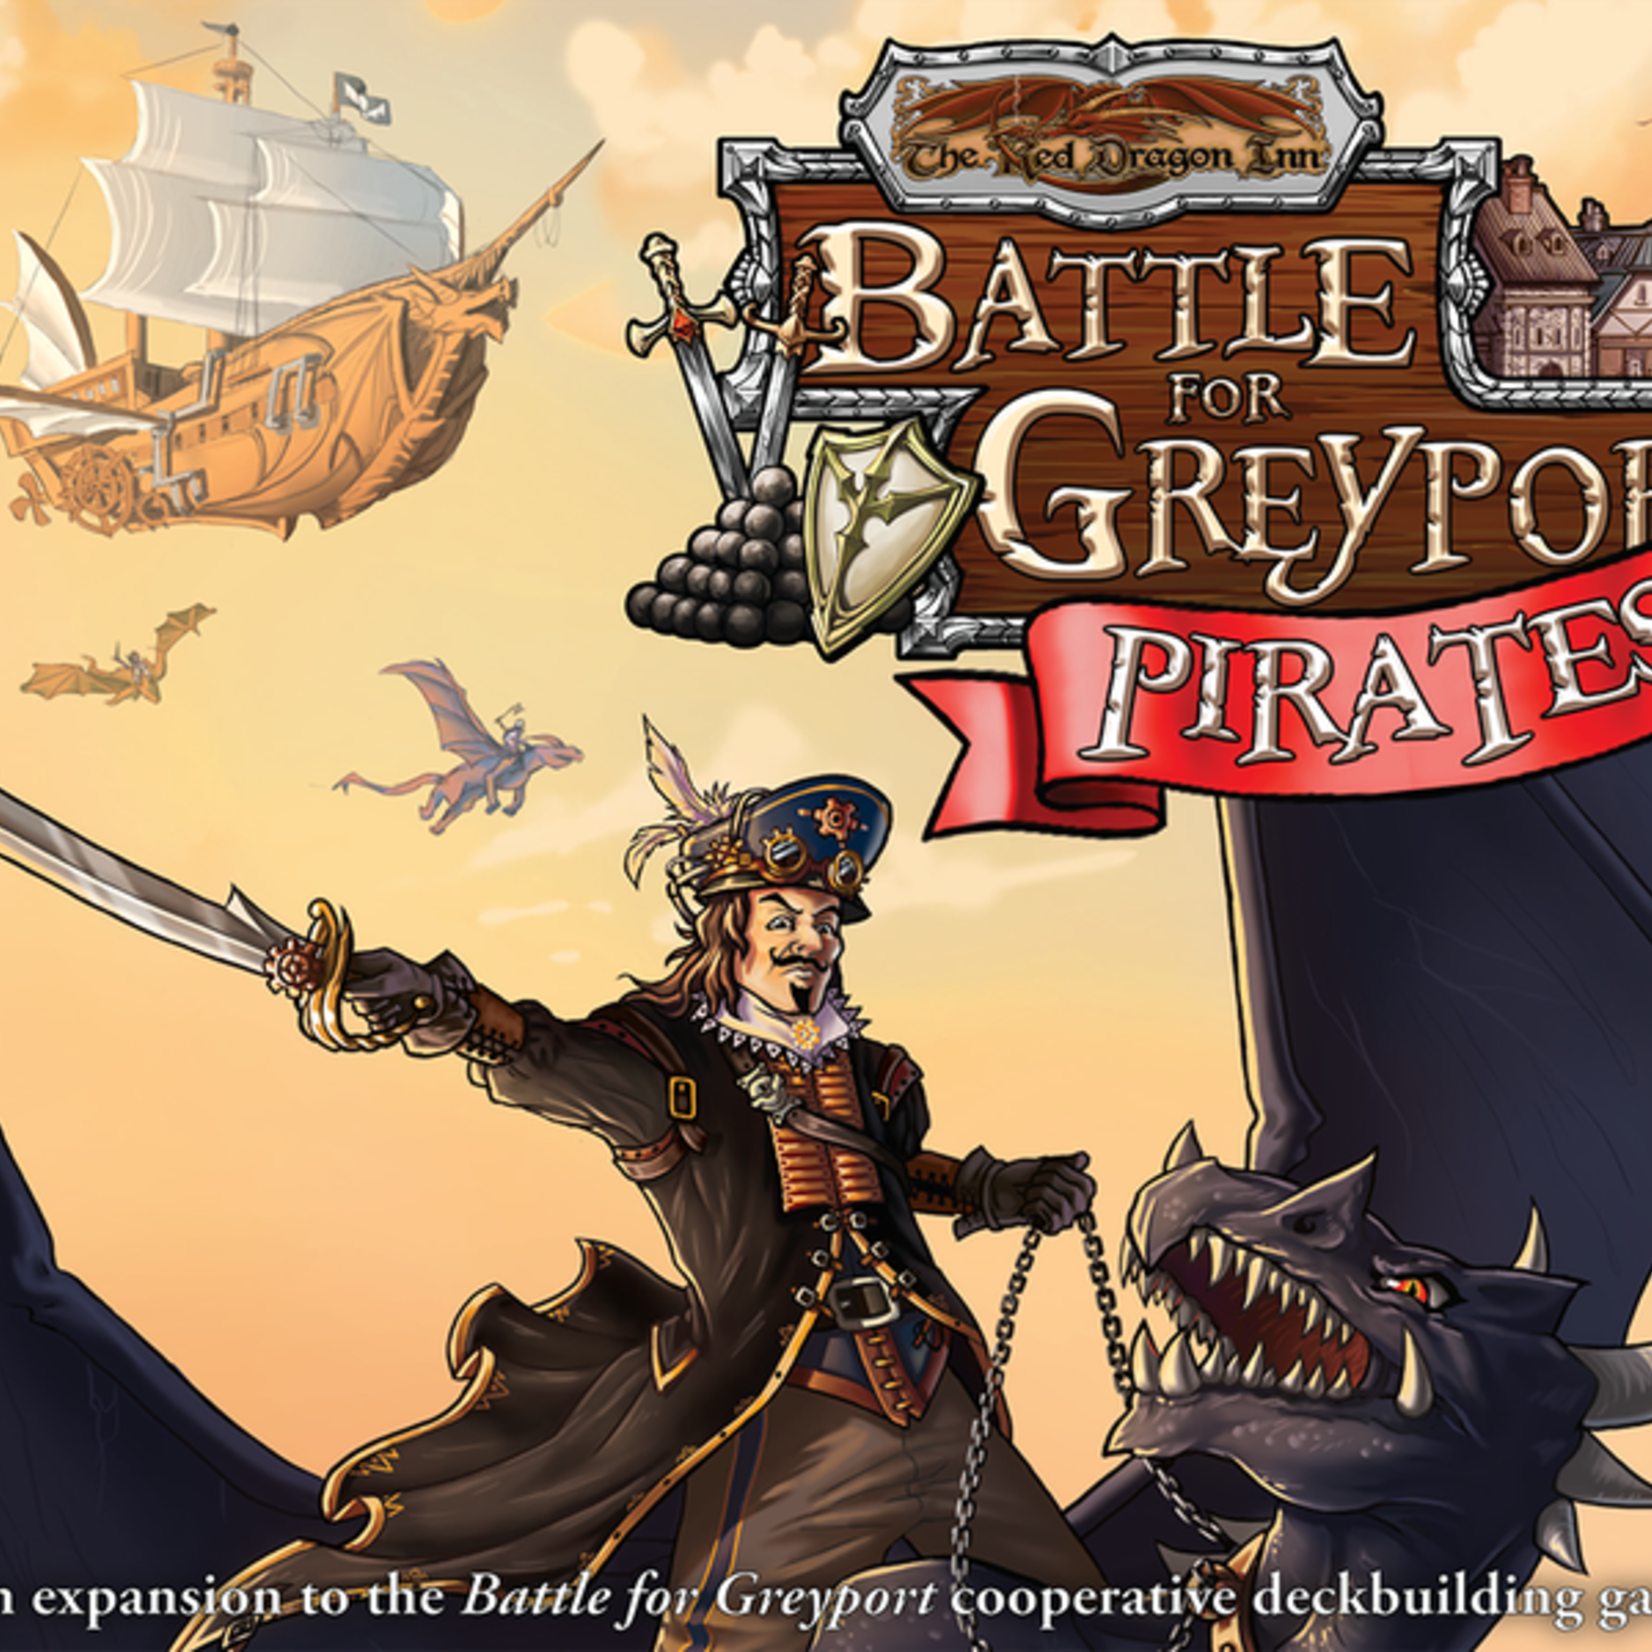 Slugfest Games Red Dragon Inn: Battle for Greyport - Pirates!